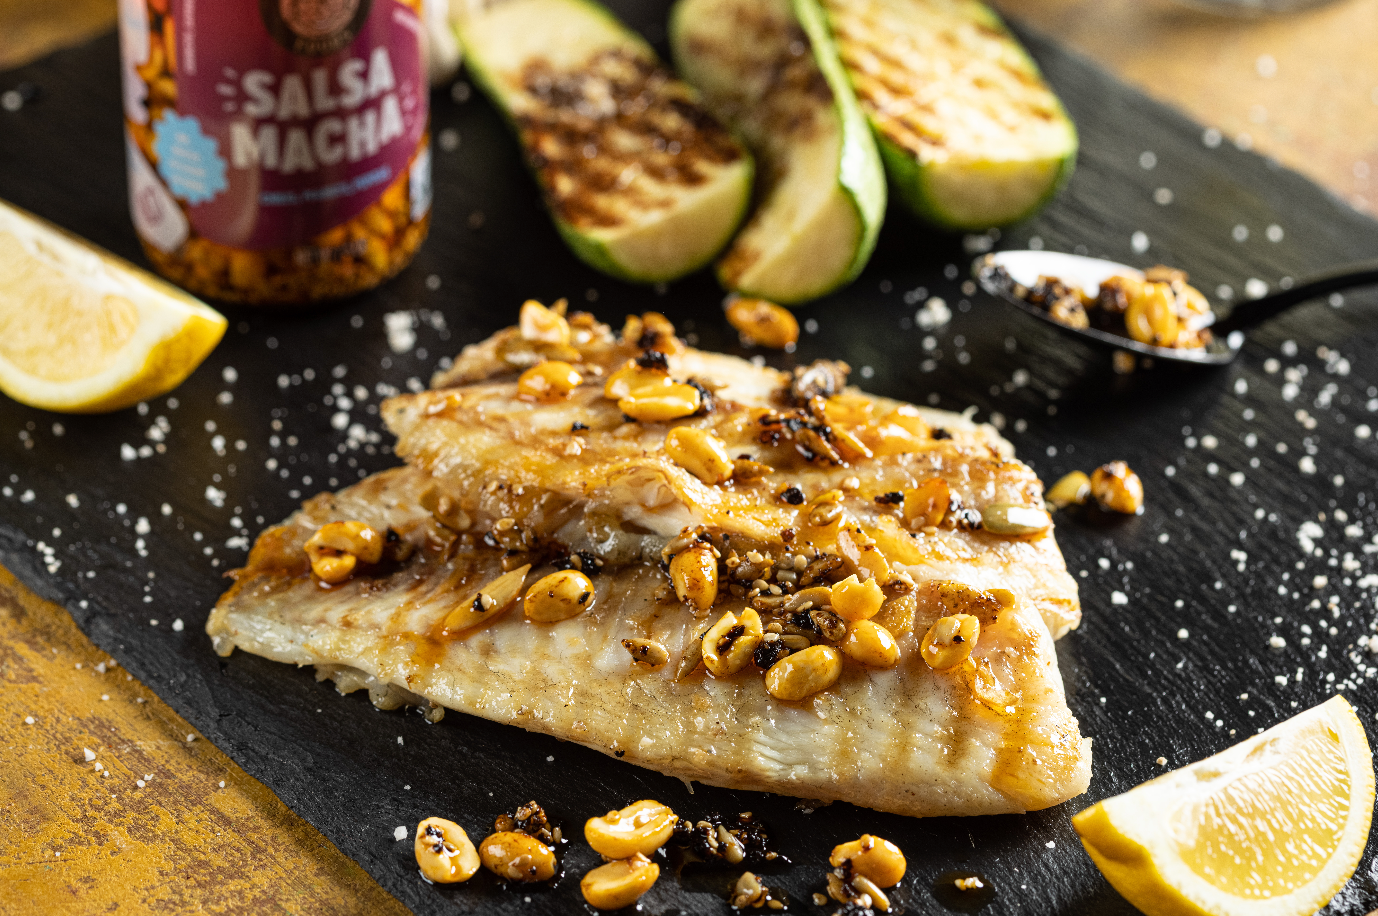 Salsa Macha takes your average fish & veggies dip to the next level